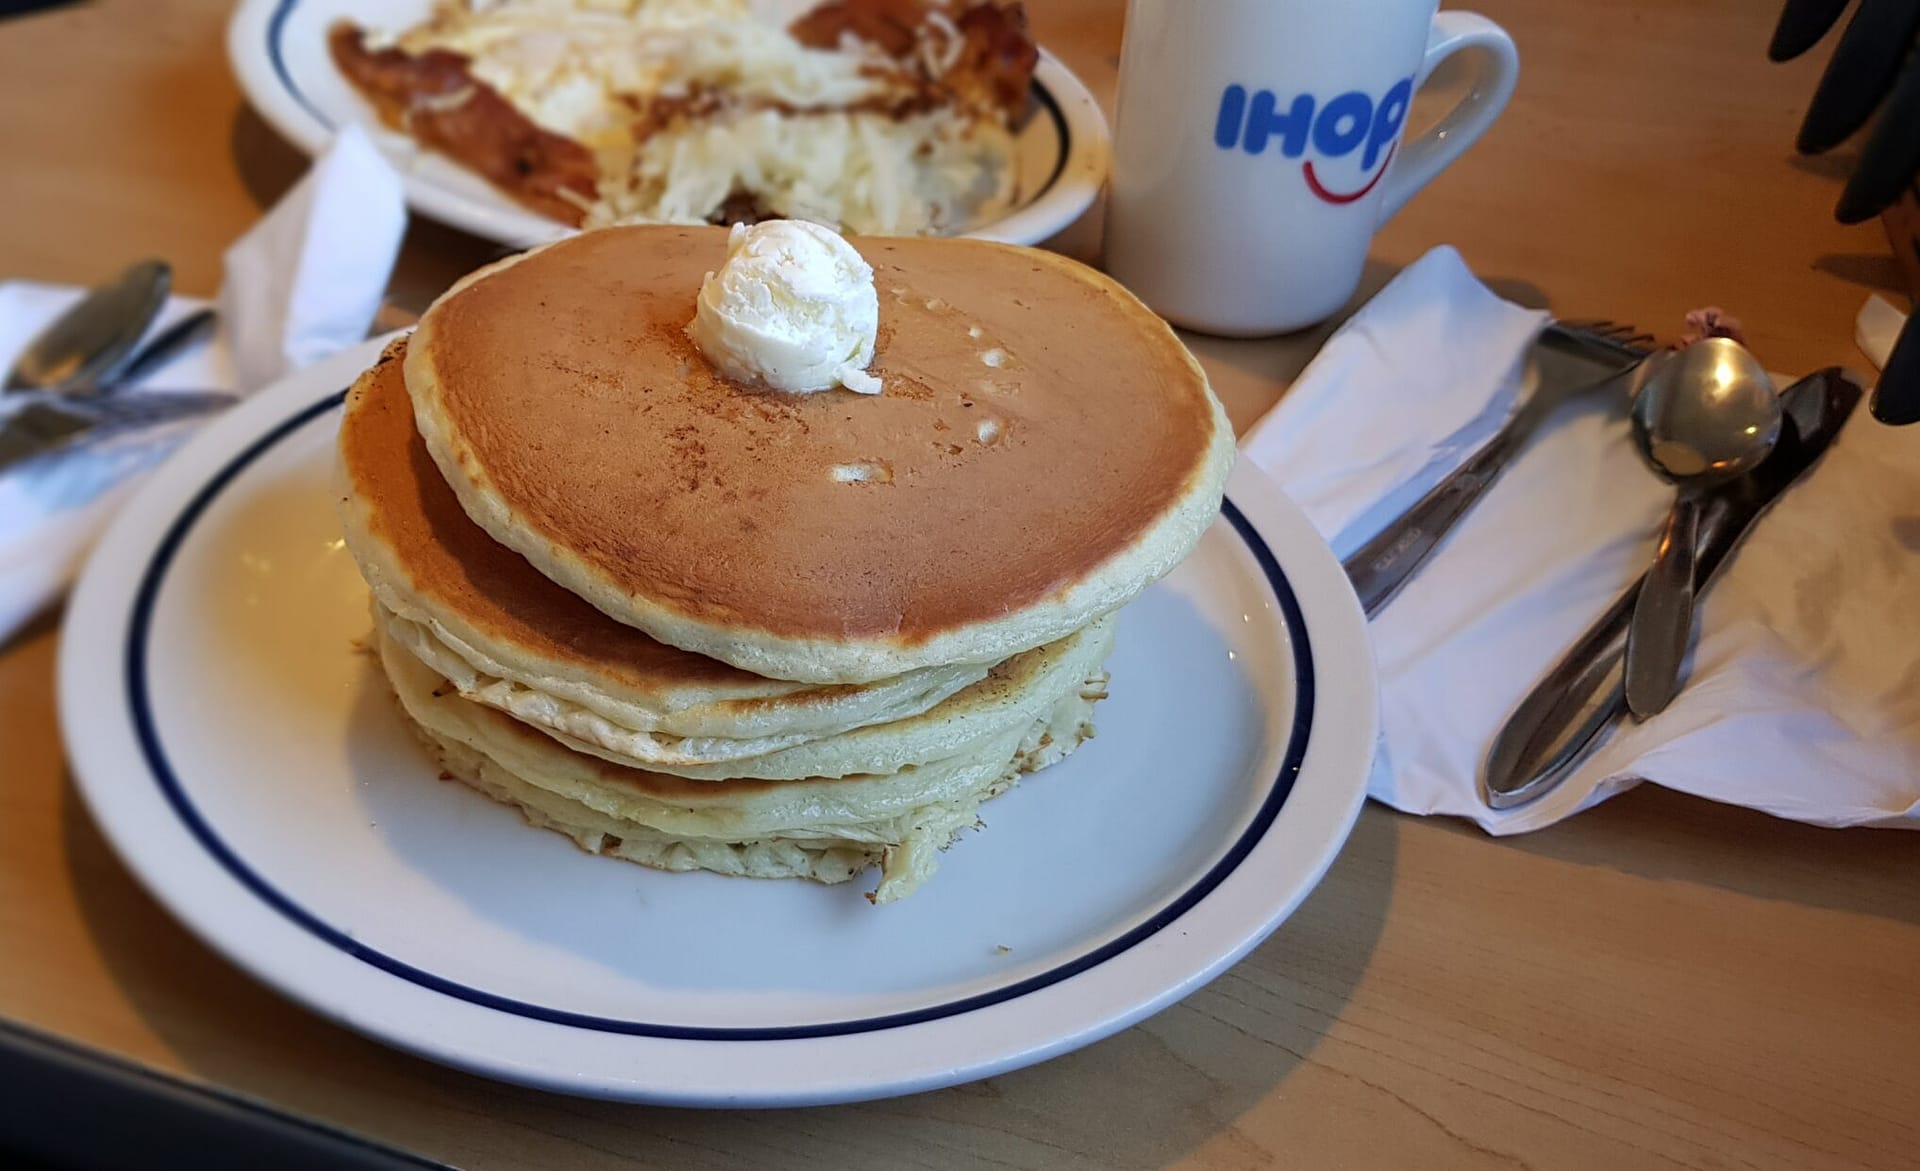 IHOP - O típico café da manhã americano 